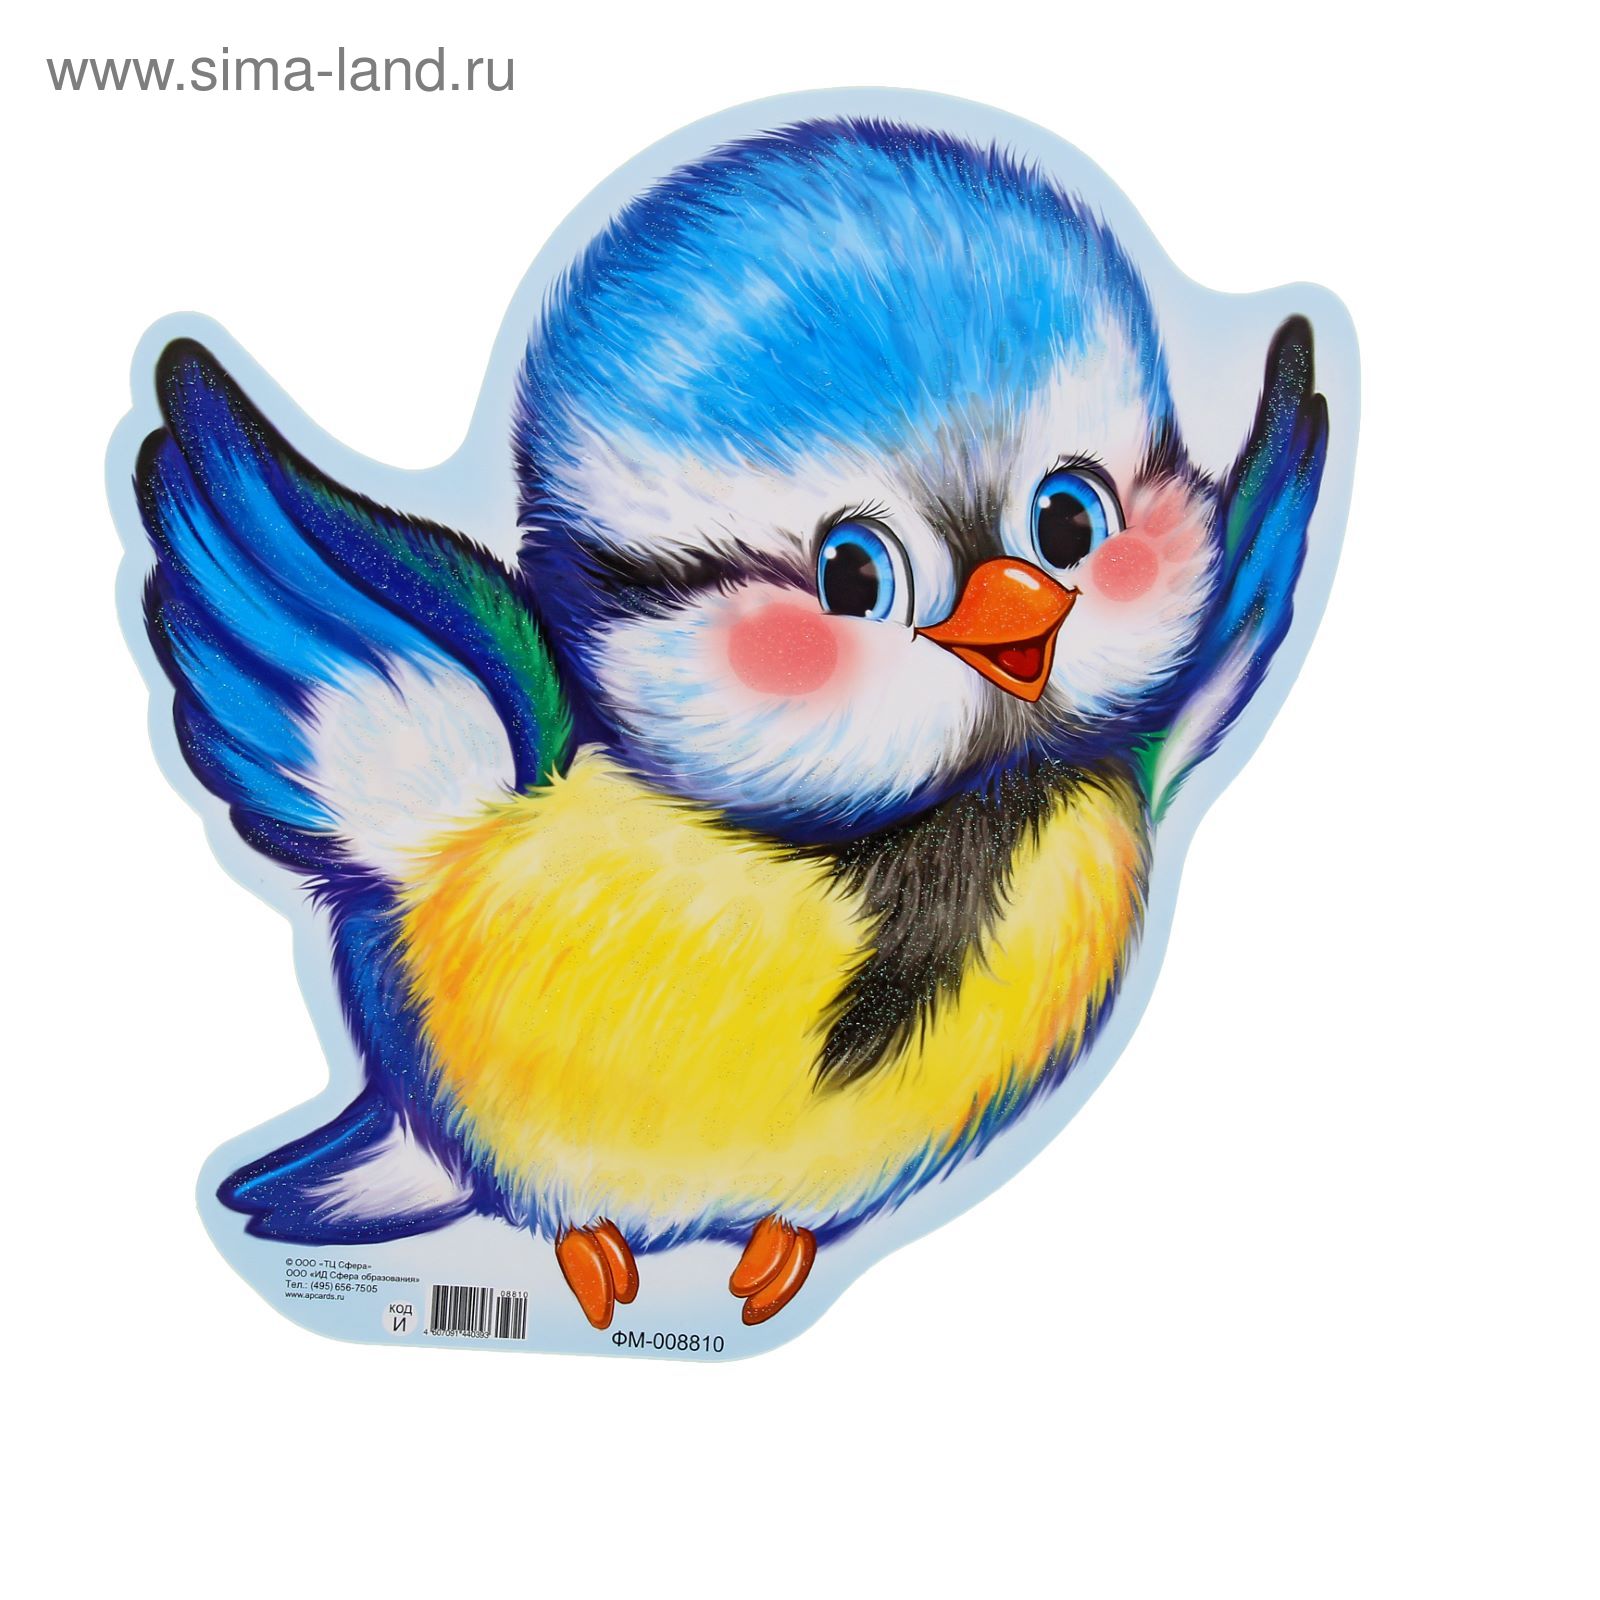 Плакат фигурный мини "Синичка" (1156100) - Купить по цене от 16.40 руб.